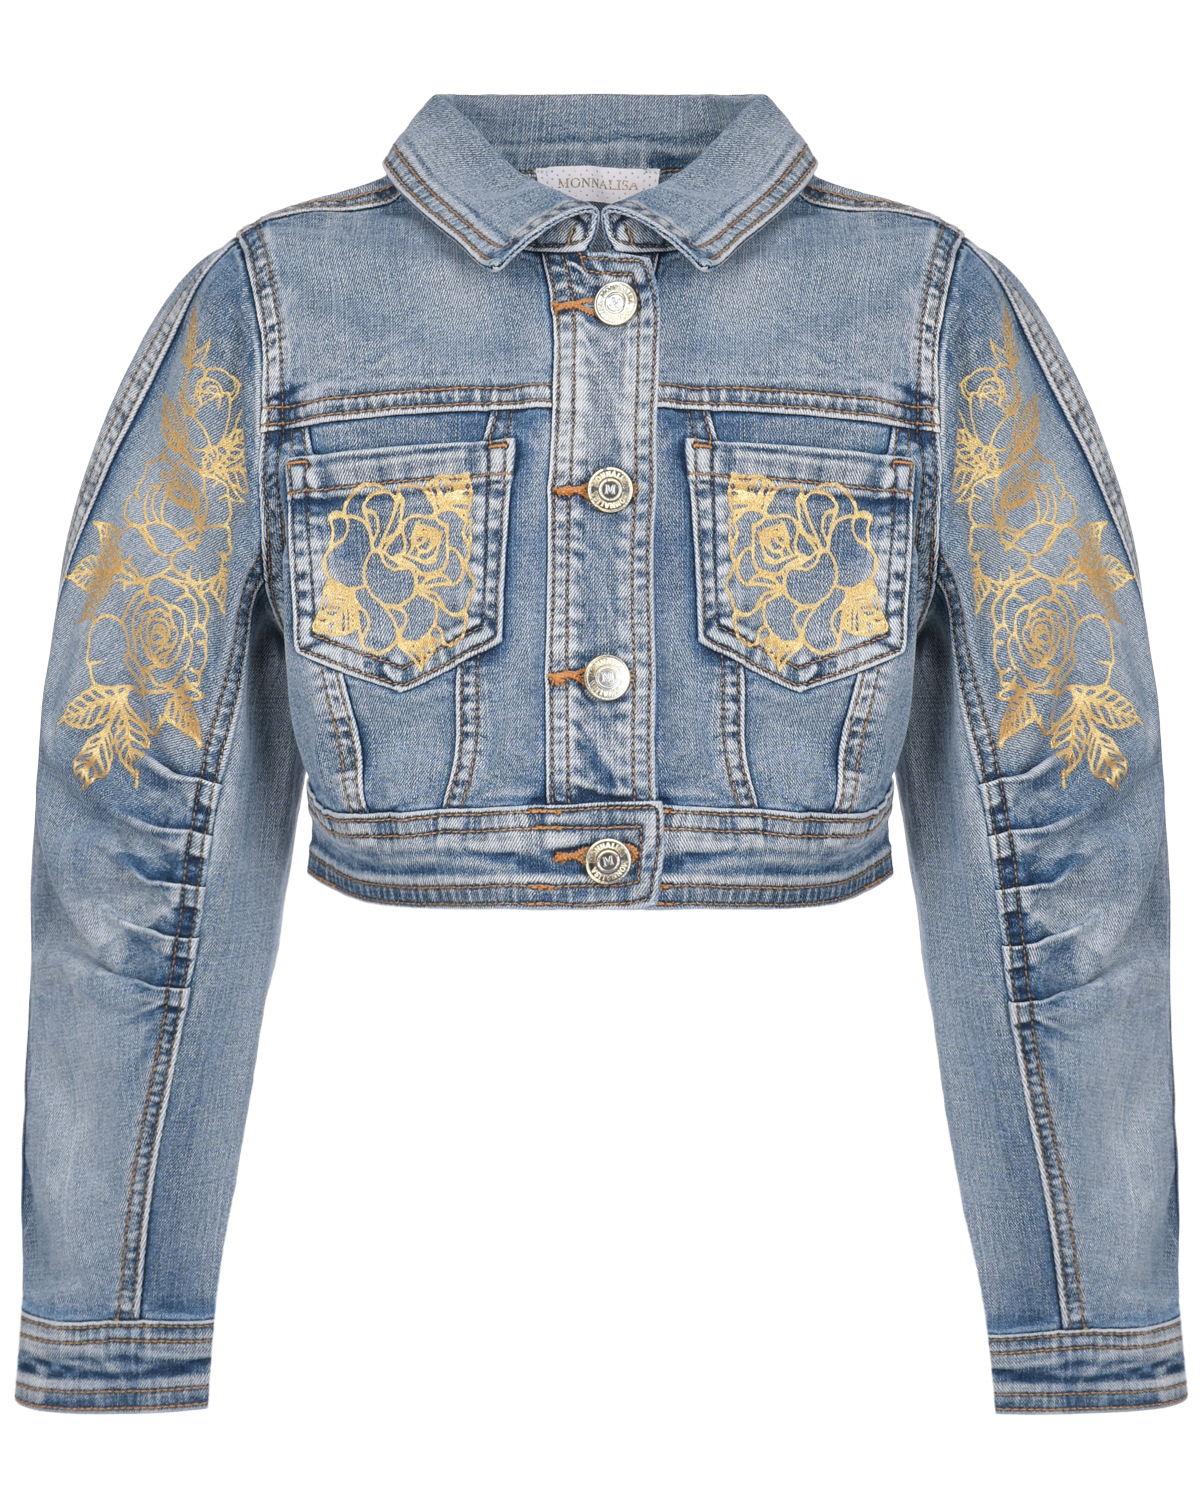 Синяя джинсовая куртка с вышивкой "розы" Monnalisa детская